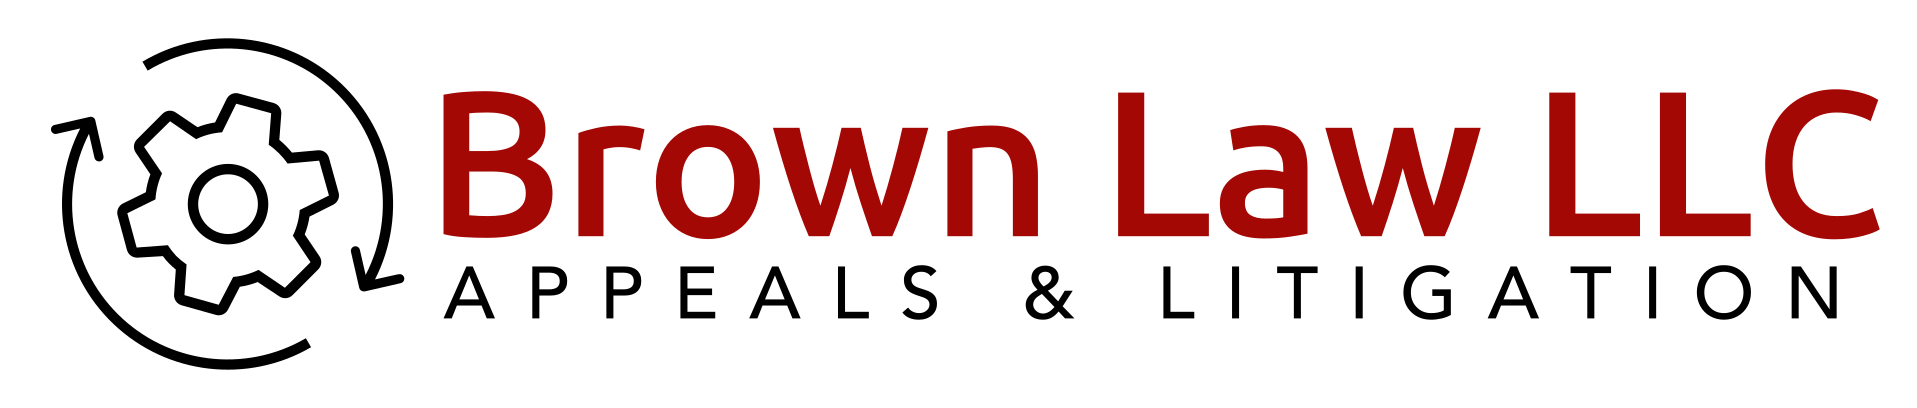 Brown Law LLC